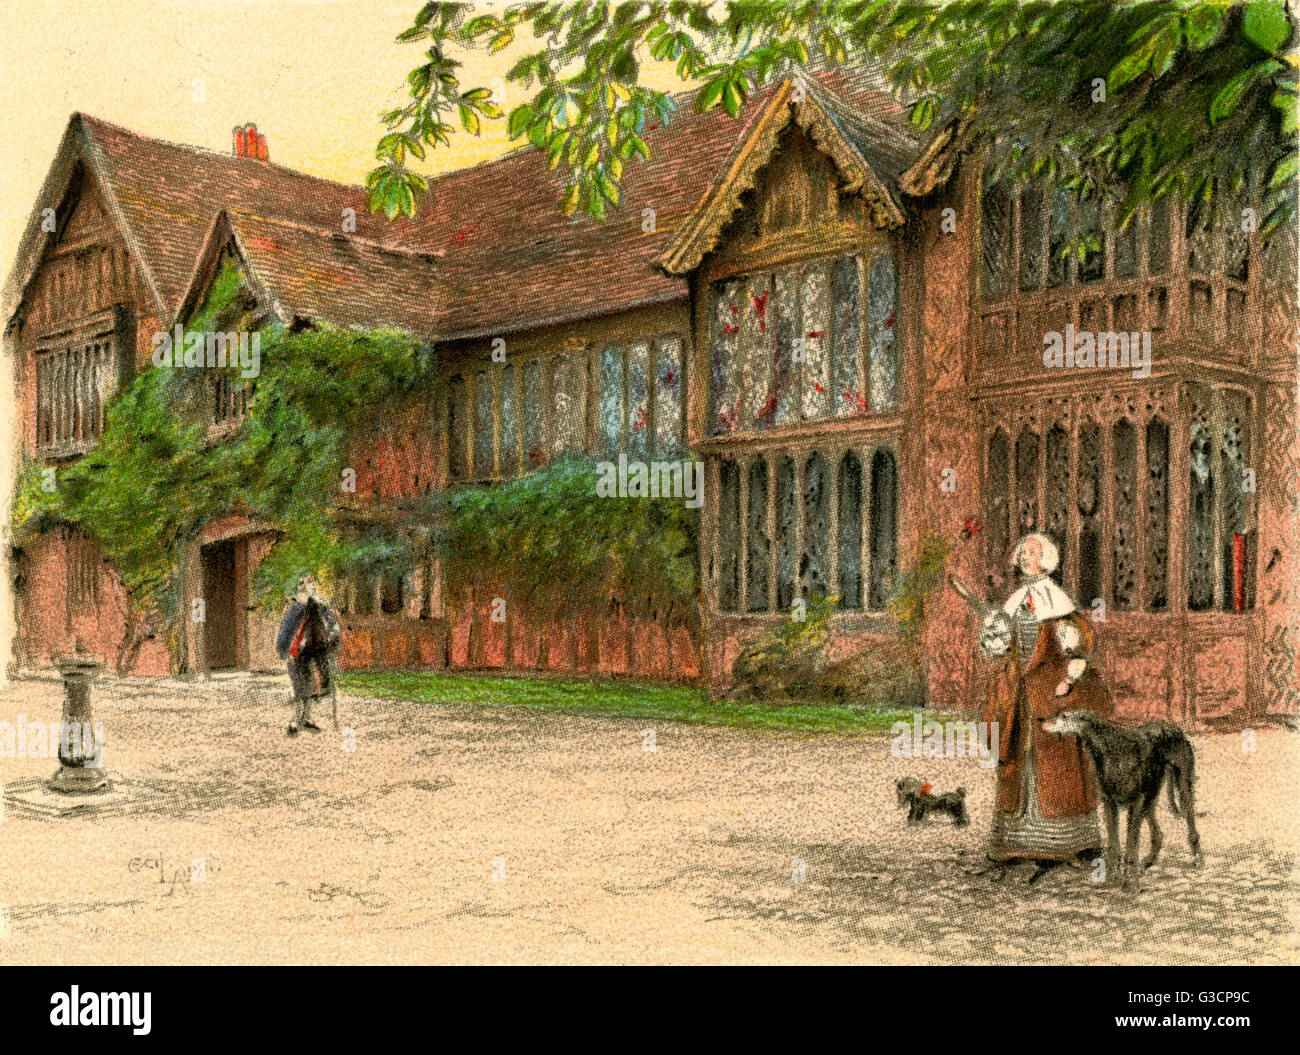 Illustration von Cecil Aldin, alte Herrenhäuser--Ockwells Manor House, ein 15. Jahrhundert Fachwerk-Herrenhaus in der Nähe von Maidenhead, Berkshire.  Zeigt die Vorderseite des Hauses mit Menschen und Hunden.      Datum: 1923 Stockfoto